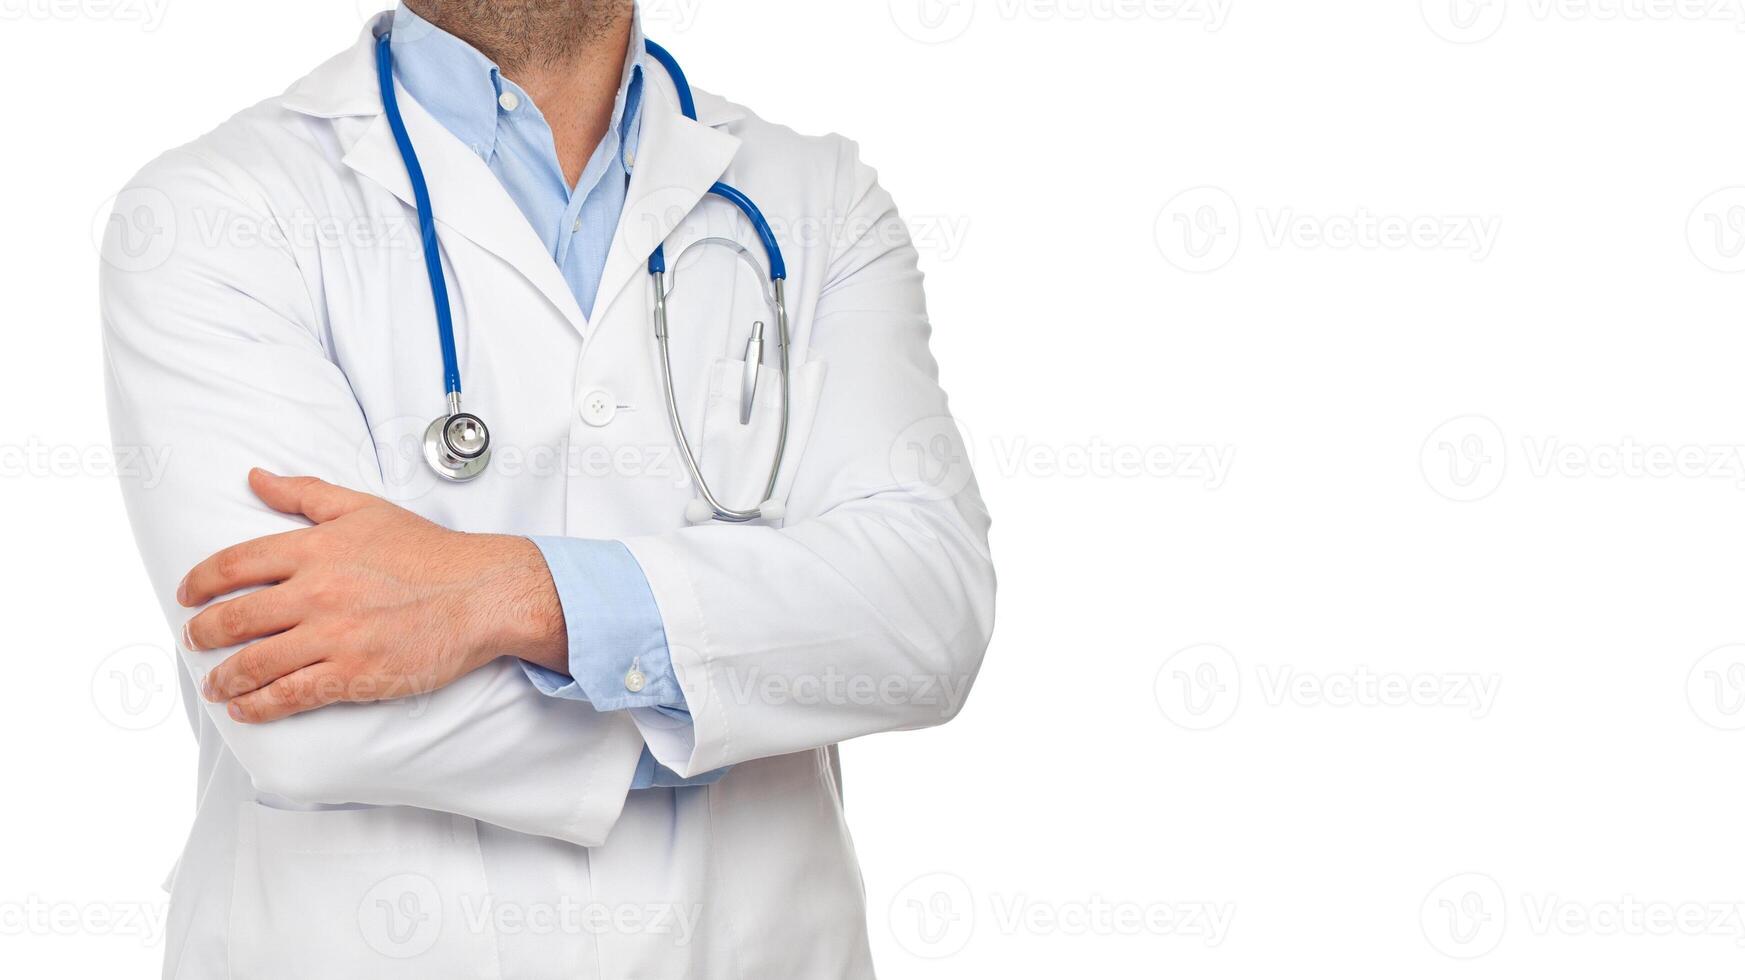 detailopname van een dokter met gevouwen armen foto